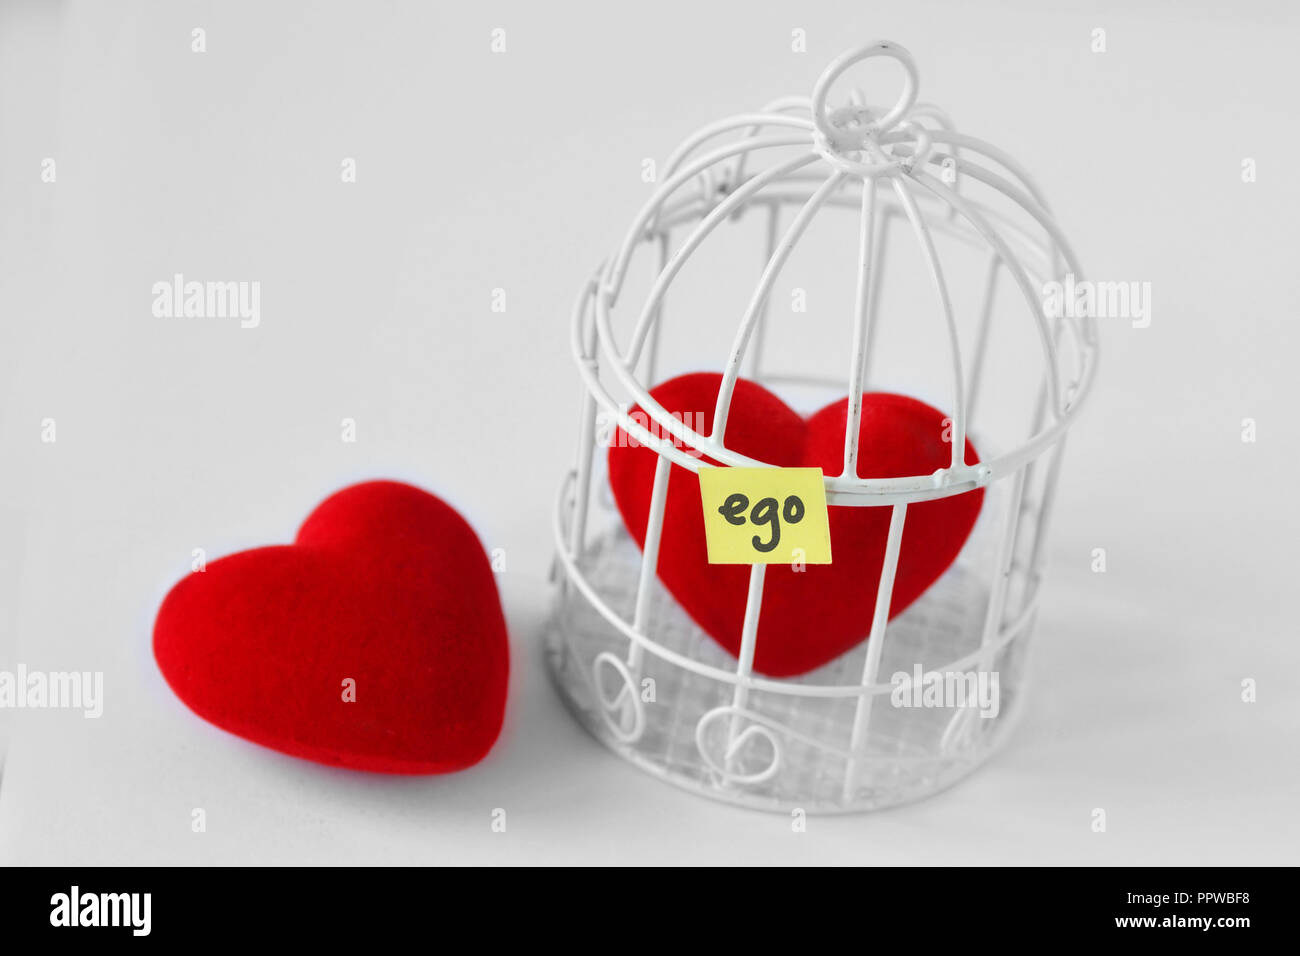 Sie Herz und Herz in einem Vogelkäfig mit dem Wort Ego auf Papier Hinweis geschrieben - Liebe und Freiheit Konzept Stockfoto